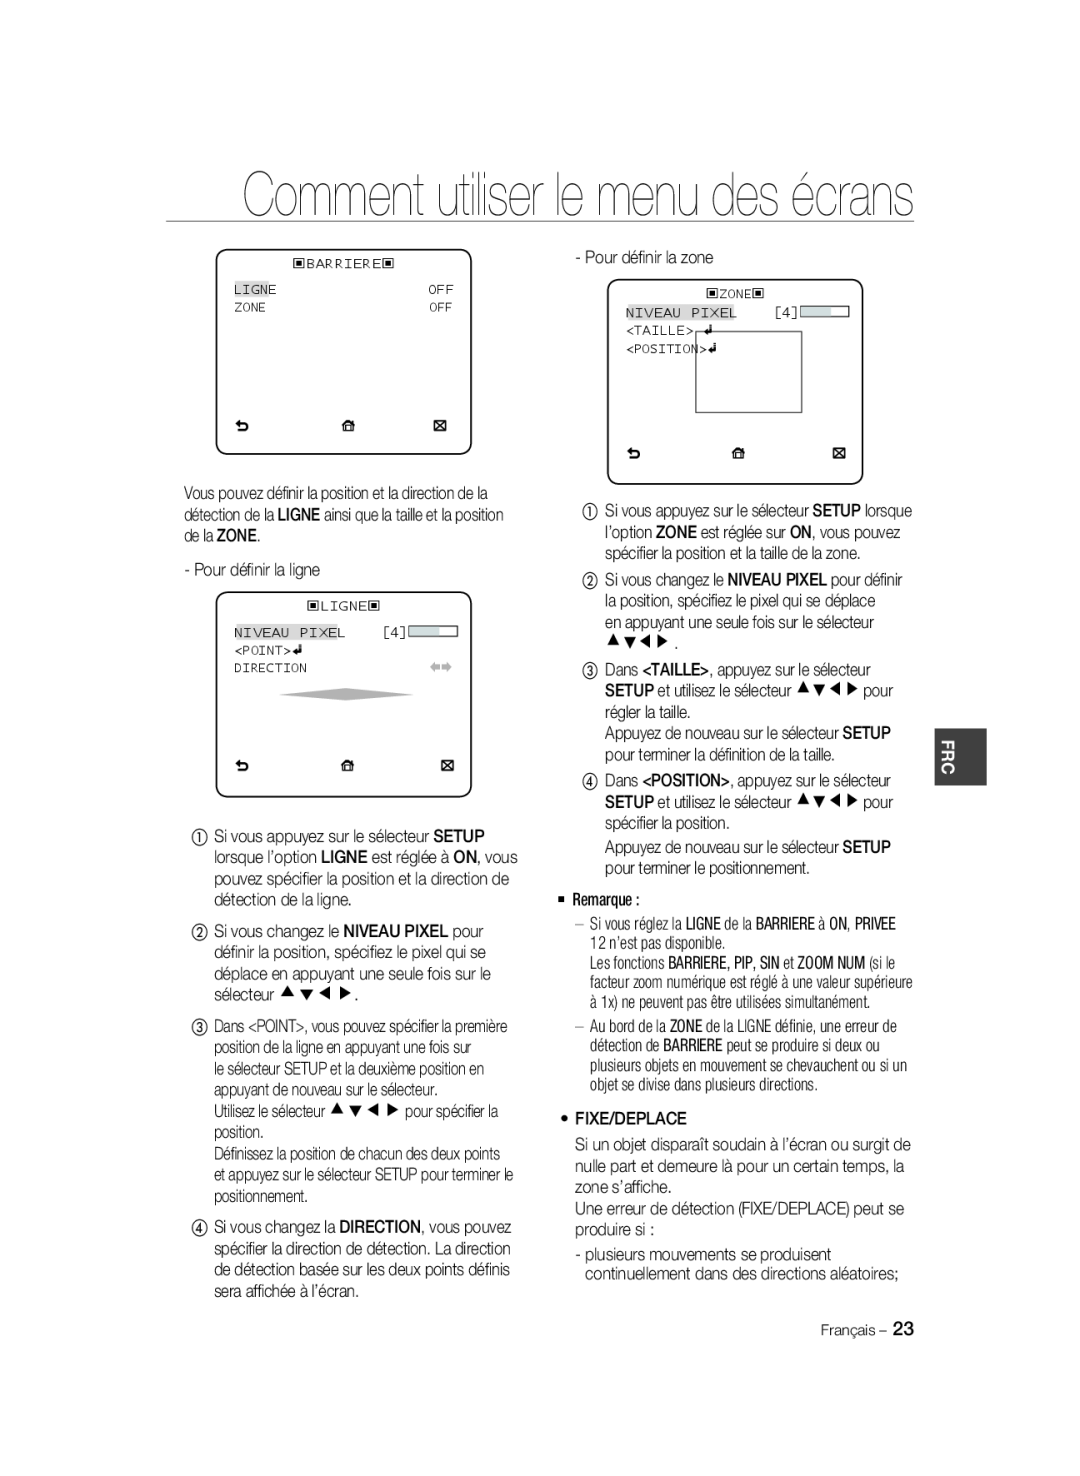 Samsung SCC-A2033P manual Comment utiliser le menu des écrans, Si vous réglez la LIGNE de la BARRIERE à ON, PRIVEE, Ligne 